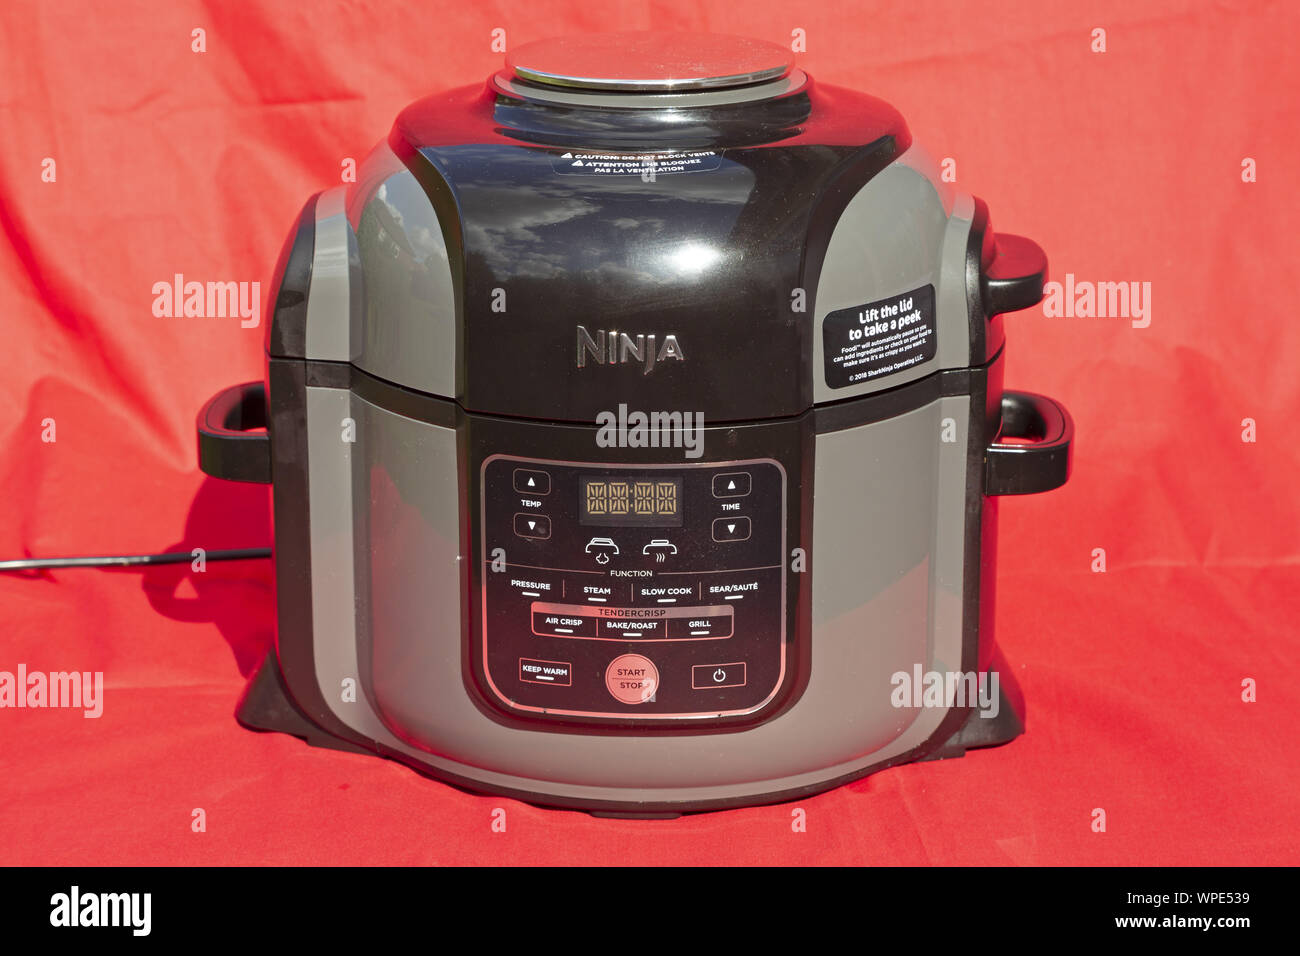 Un Ninja Foodi multi-cocina. El aparato puede cocinar, presión de vapor, rehogar, aire fresco, hornear, barbacoa, lento y cocinar los alimentos. Foto de stock